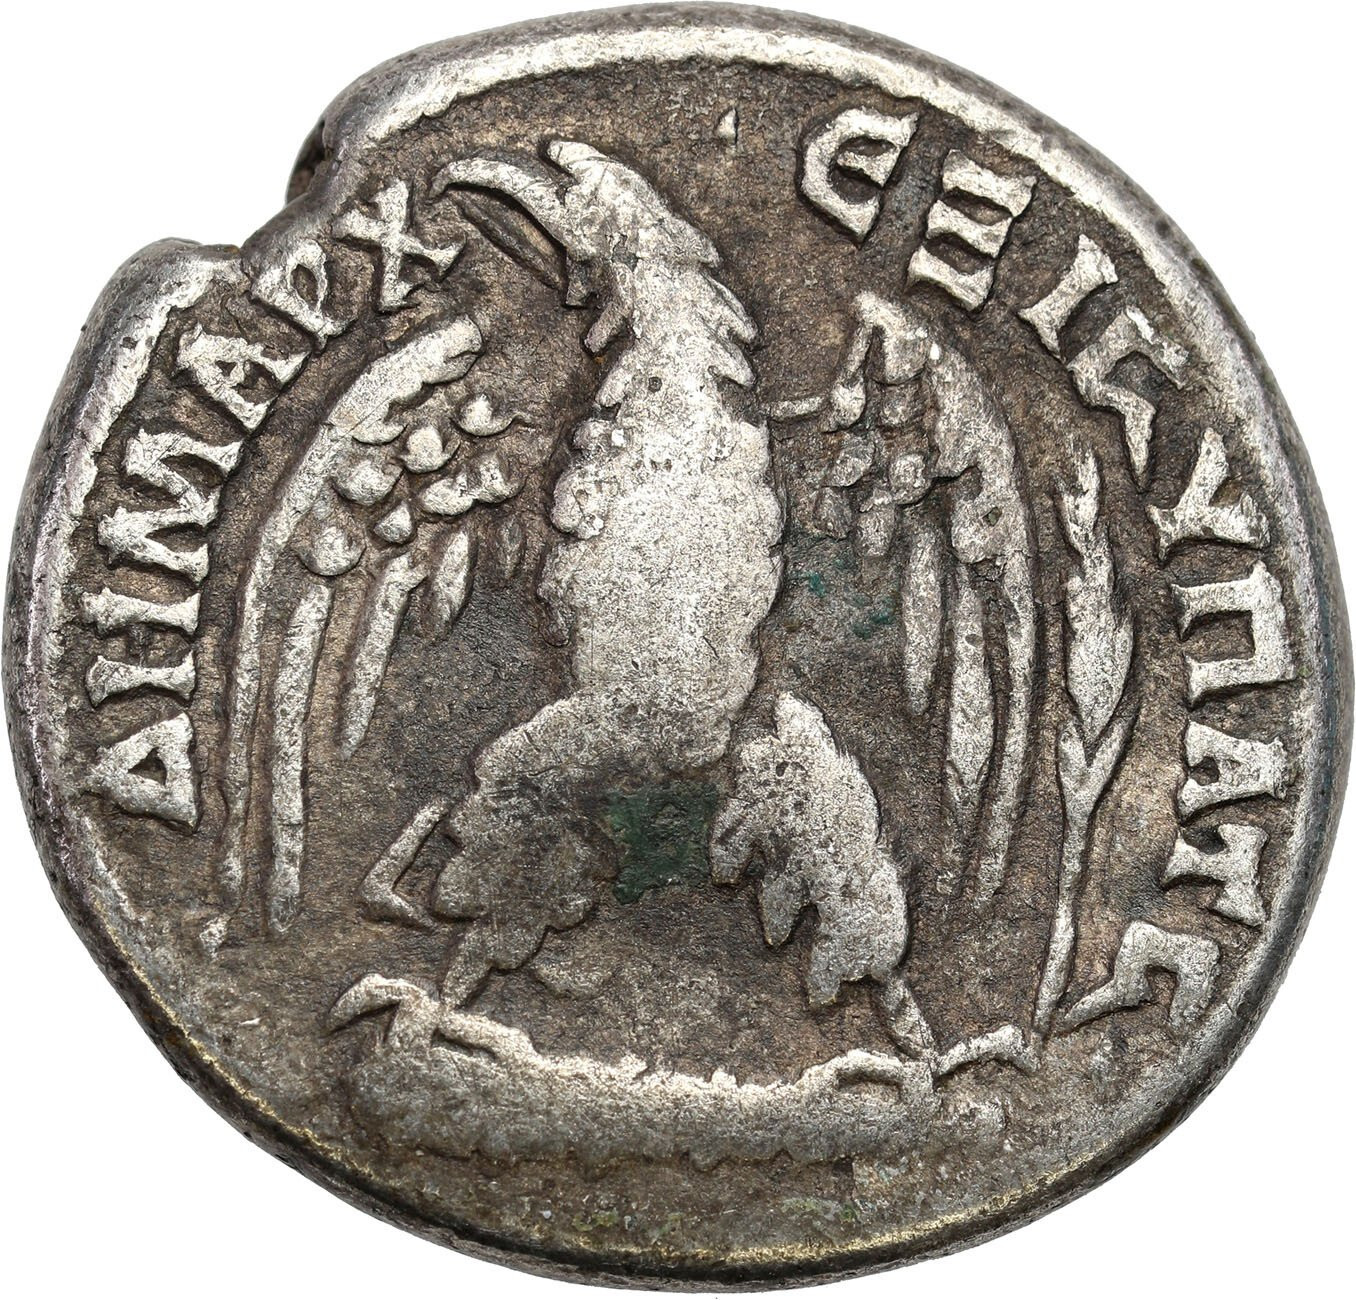 Rzym Prowincjonalny, Syria, Tetradrachma, Trajan 98 - 117 r. n. e., Antiochia